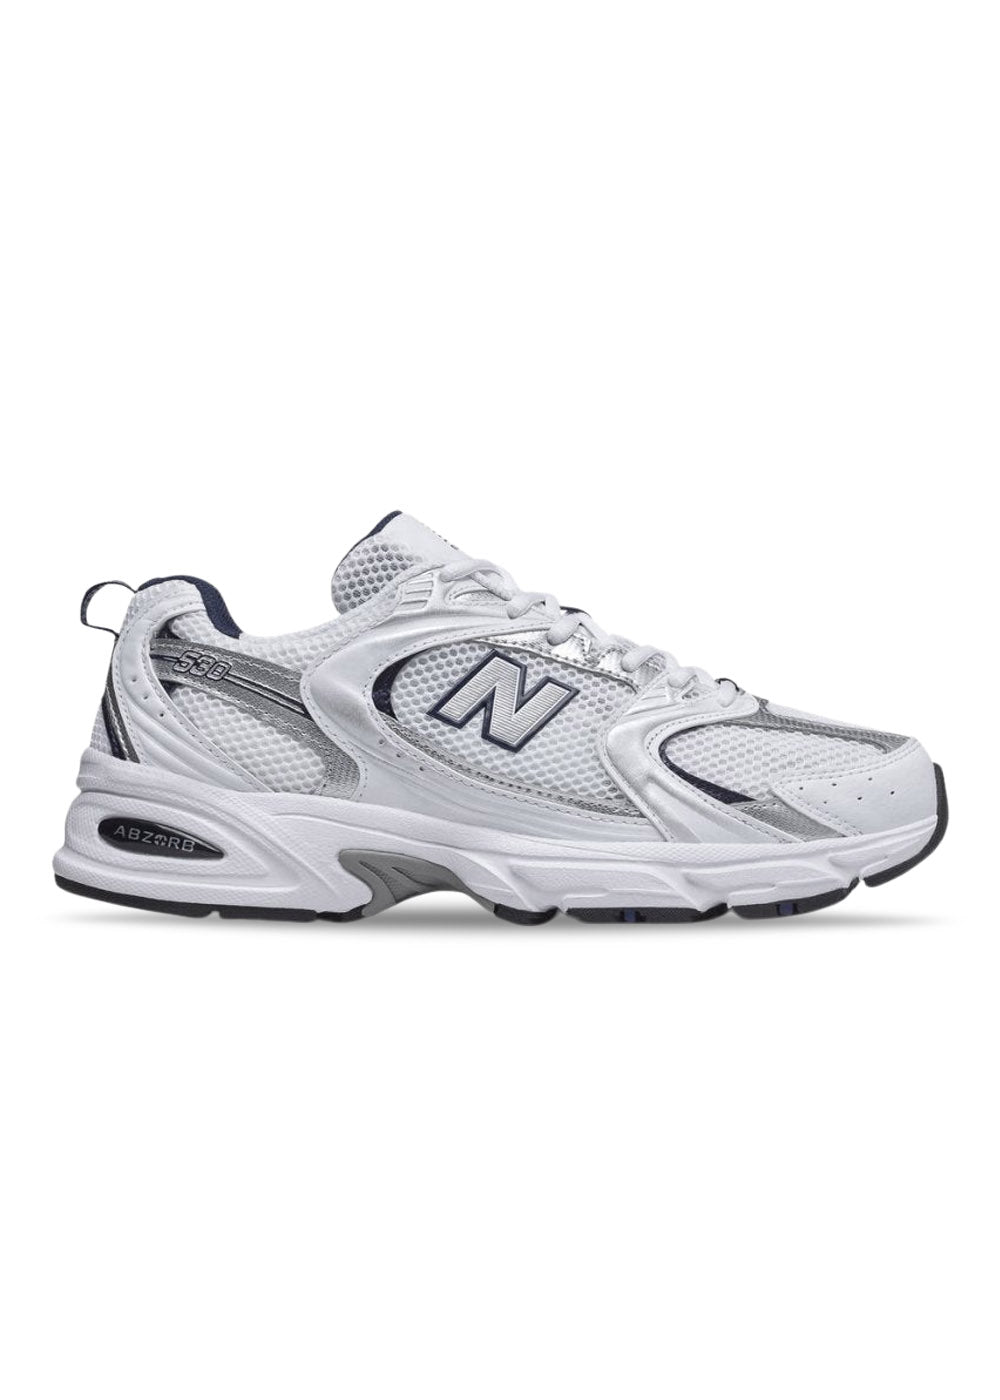 energi Græsse efterskrift Hvid MR530SG sneaker fra New Balance » New Balance 530 white